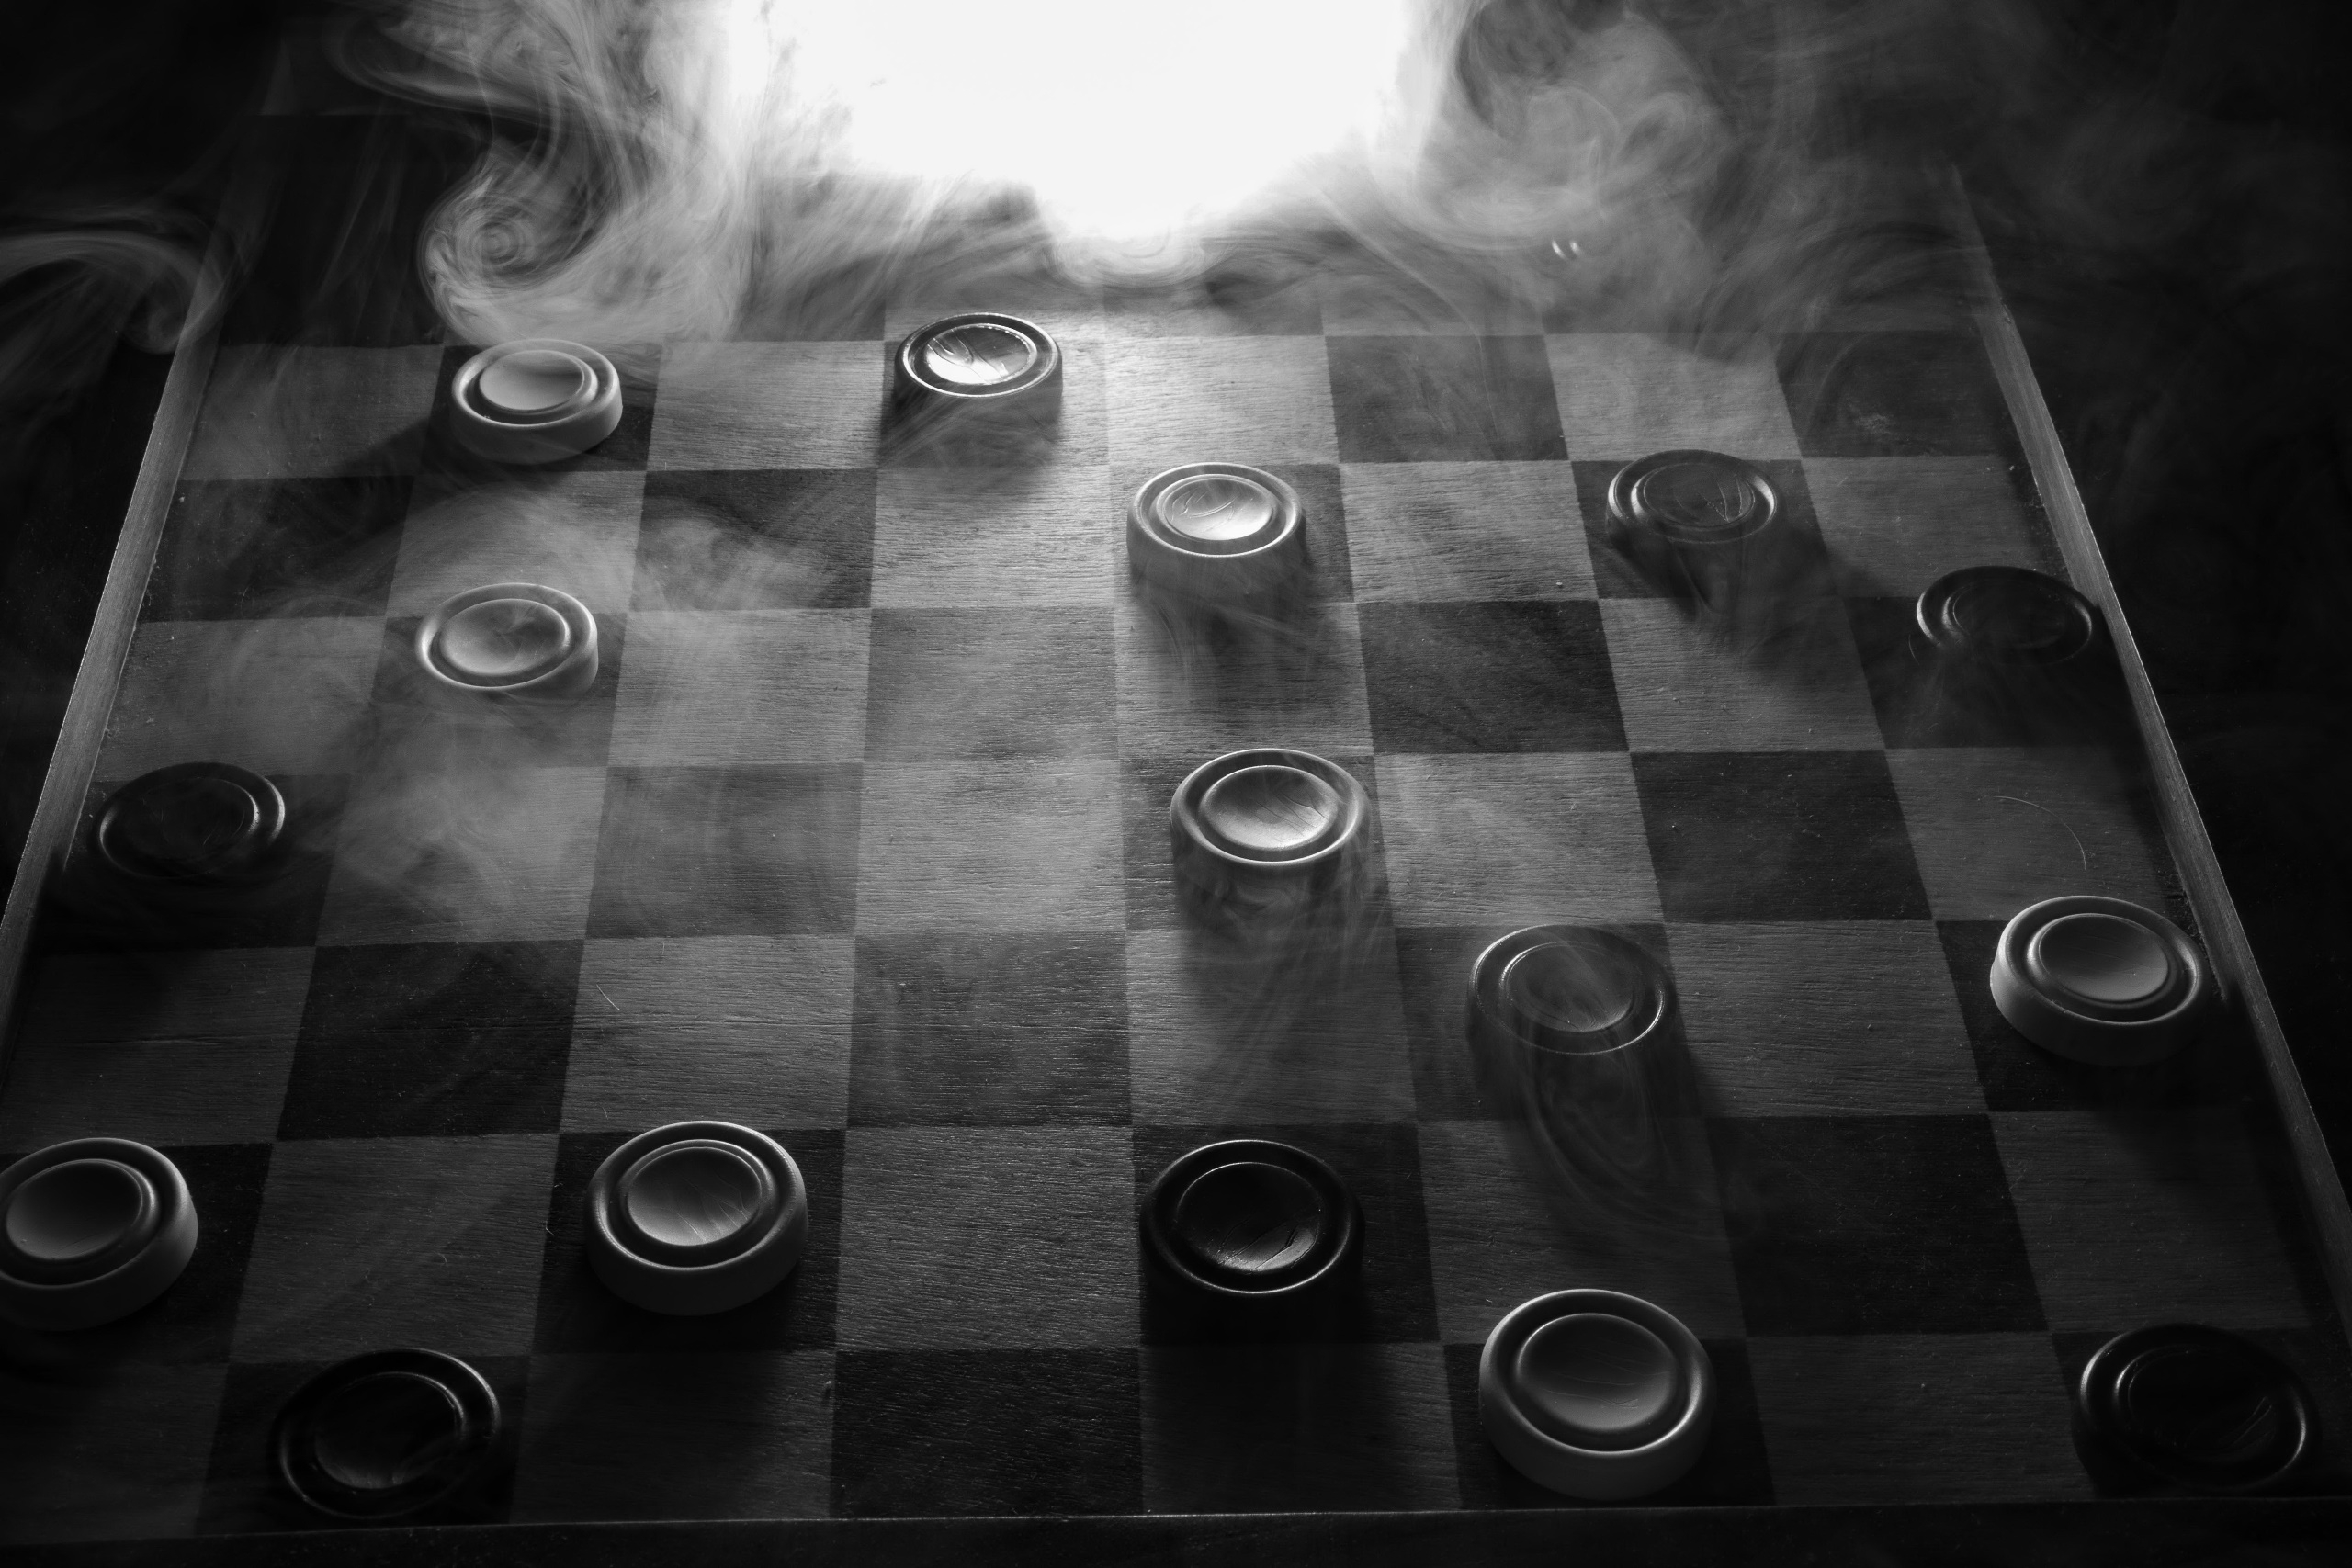 Бесплатное фото Доска с шашками на монохромном фото в дыму